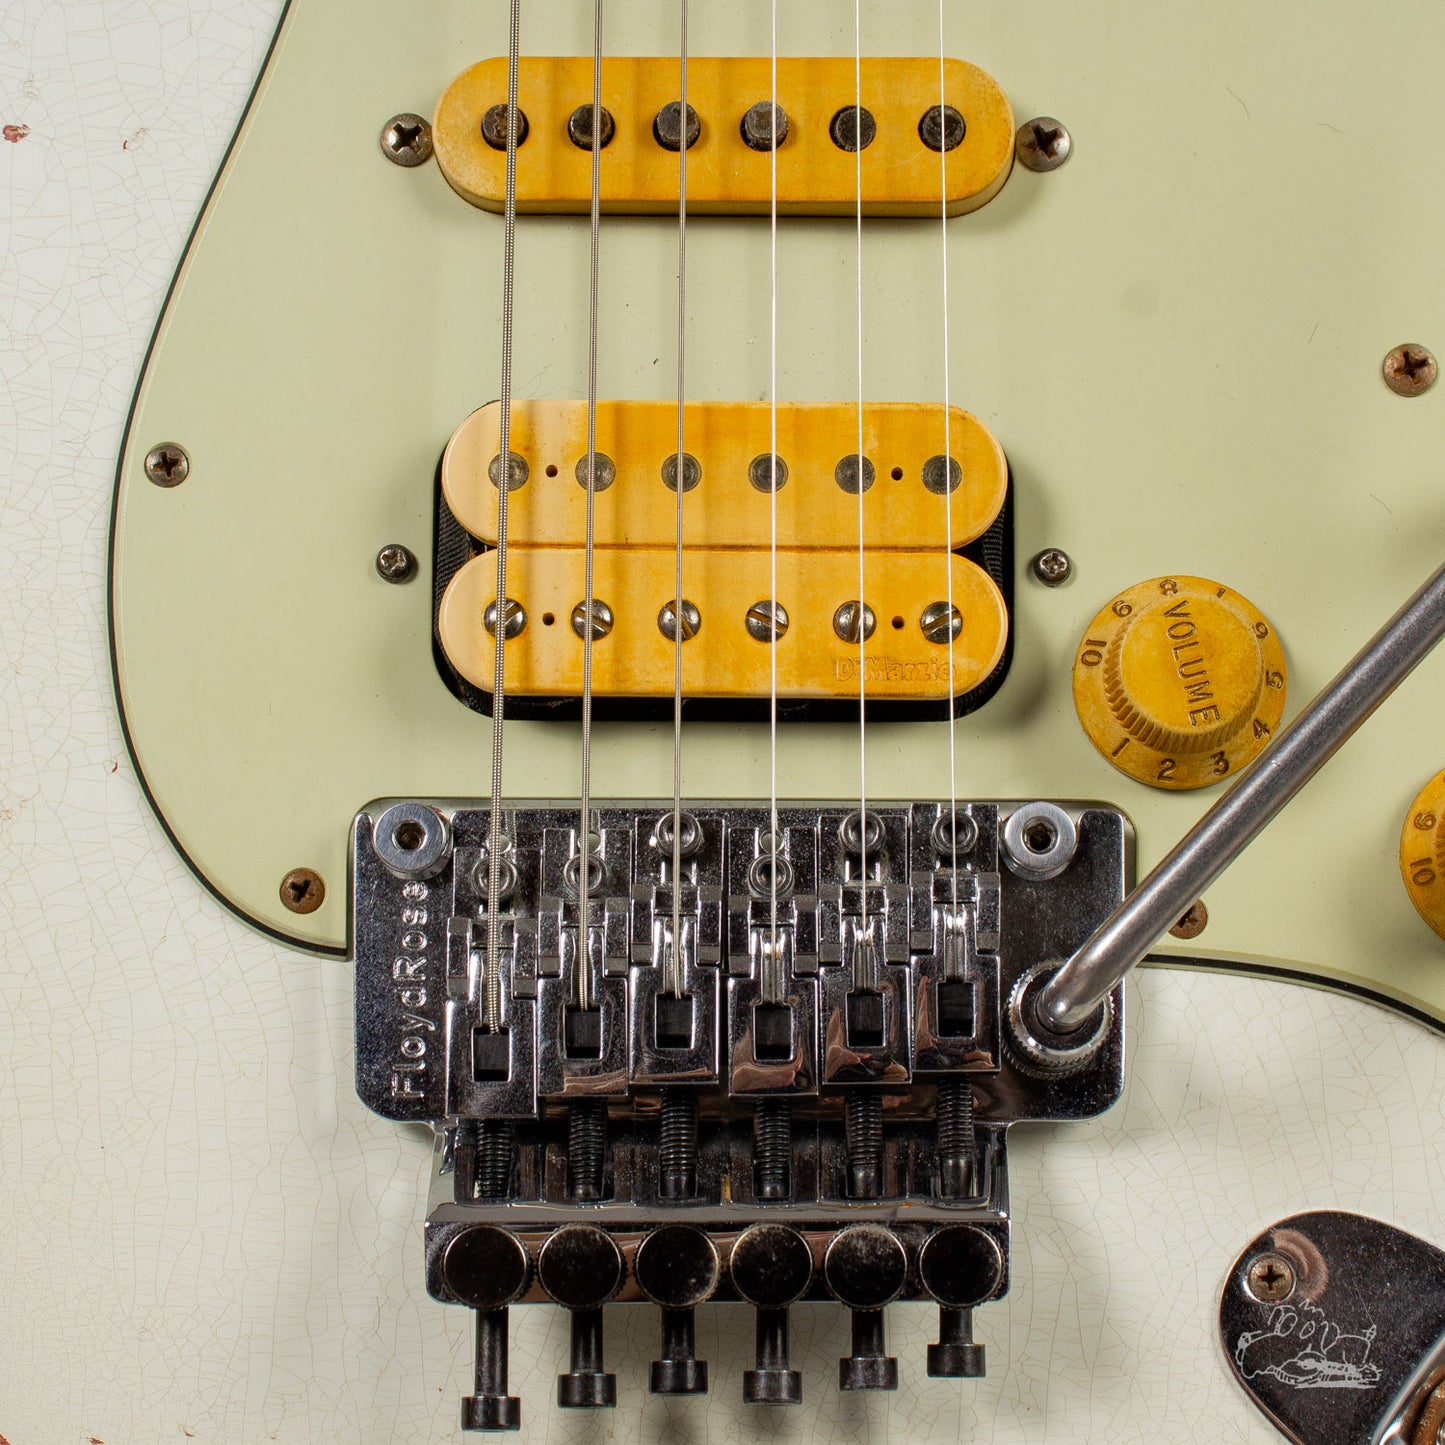 2015 Fender Custom Shop "White Lightning" '60s Stratocaster  Heavy Relic